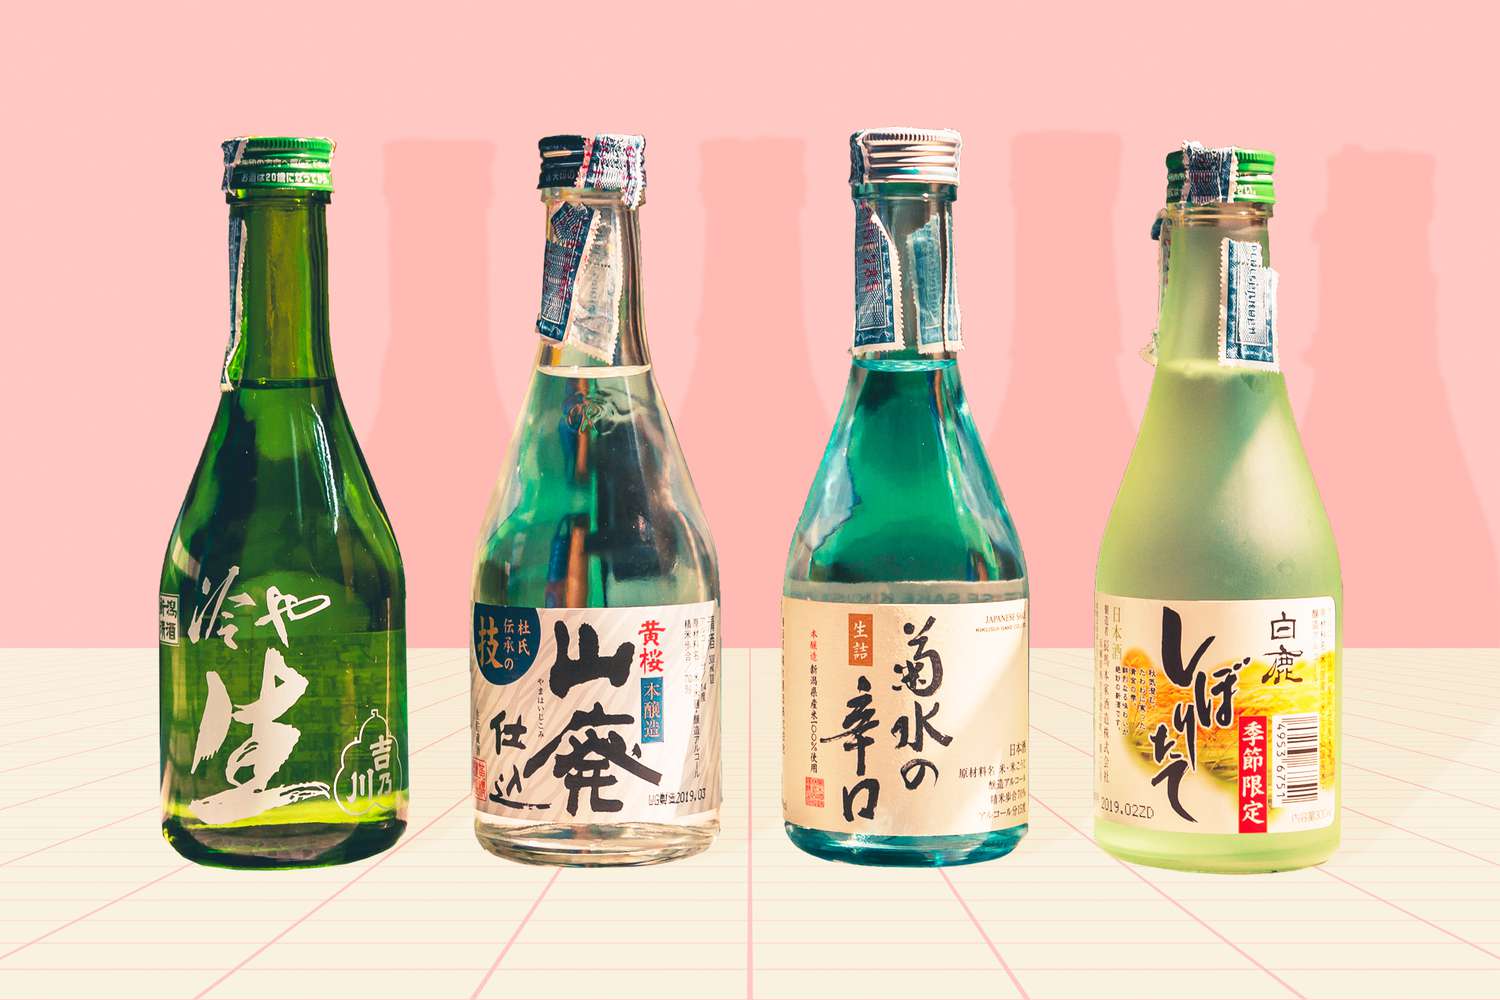 4 bottles of sake on a designed background